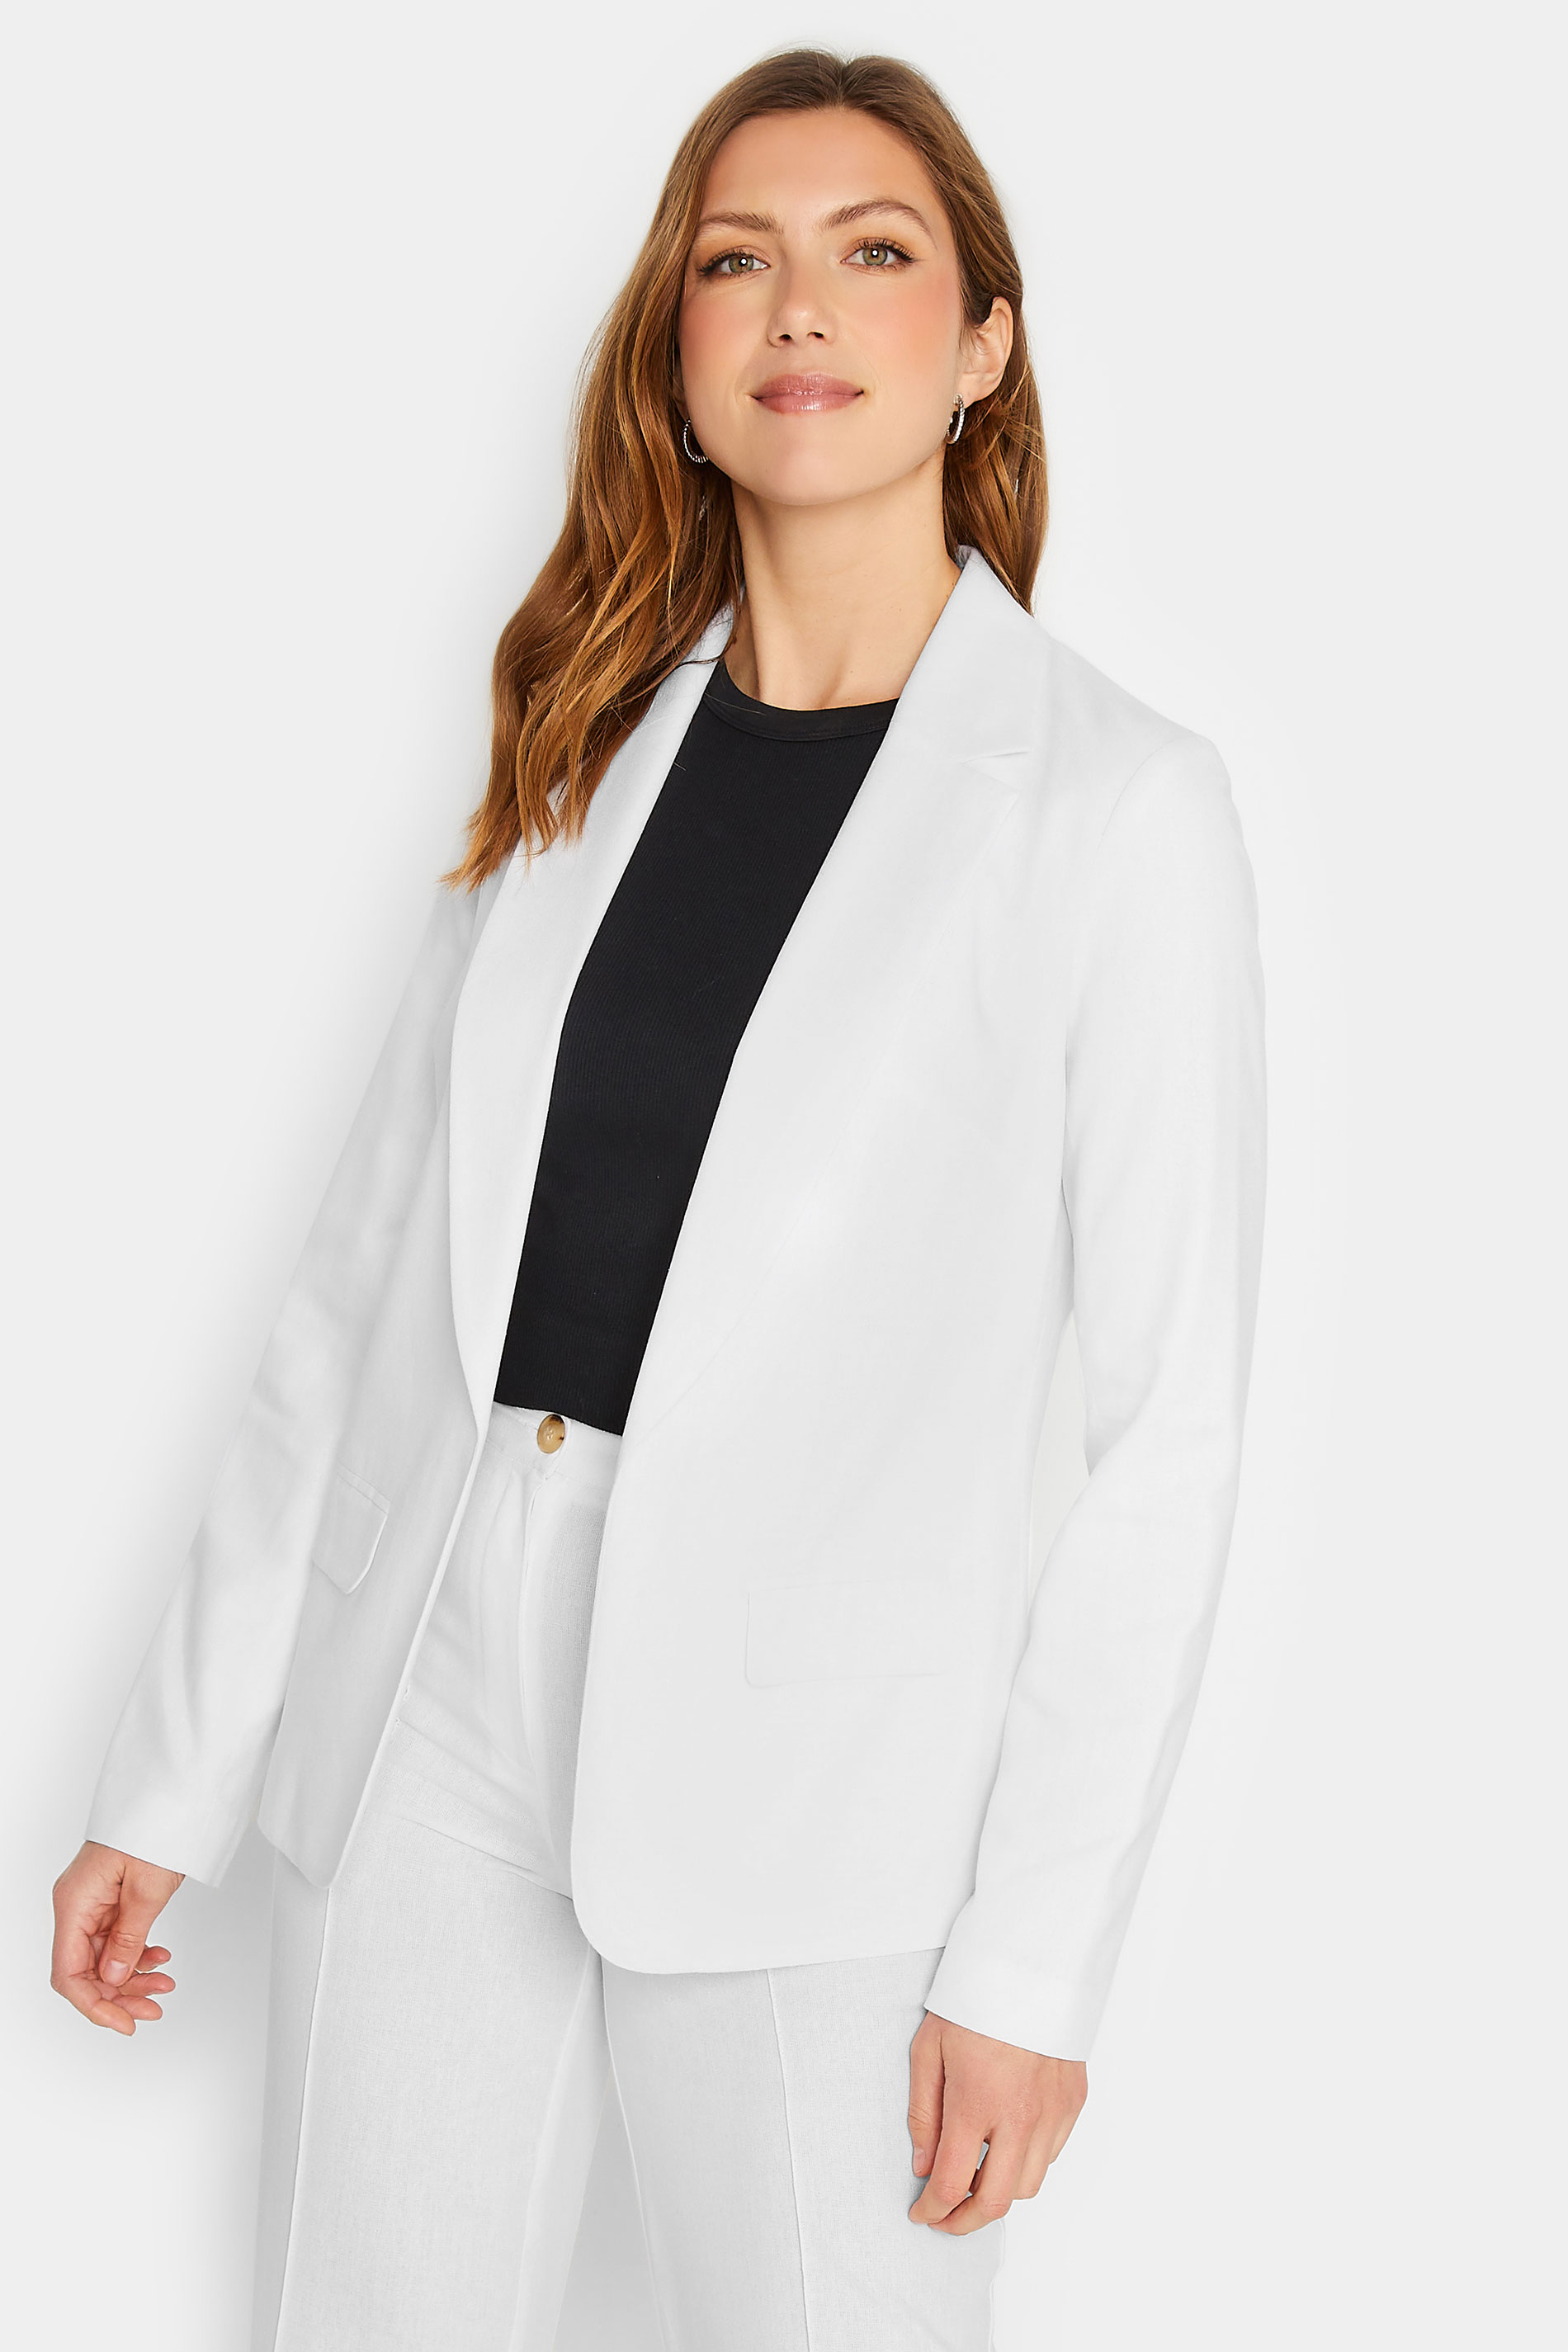 LTS Tall Womens White Linen Blazer Jacket | Long Tall Sally  2